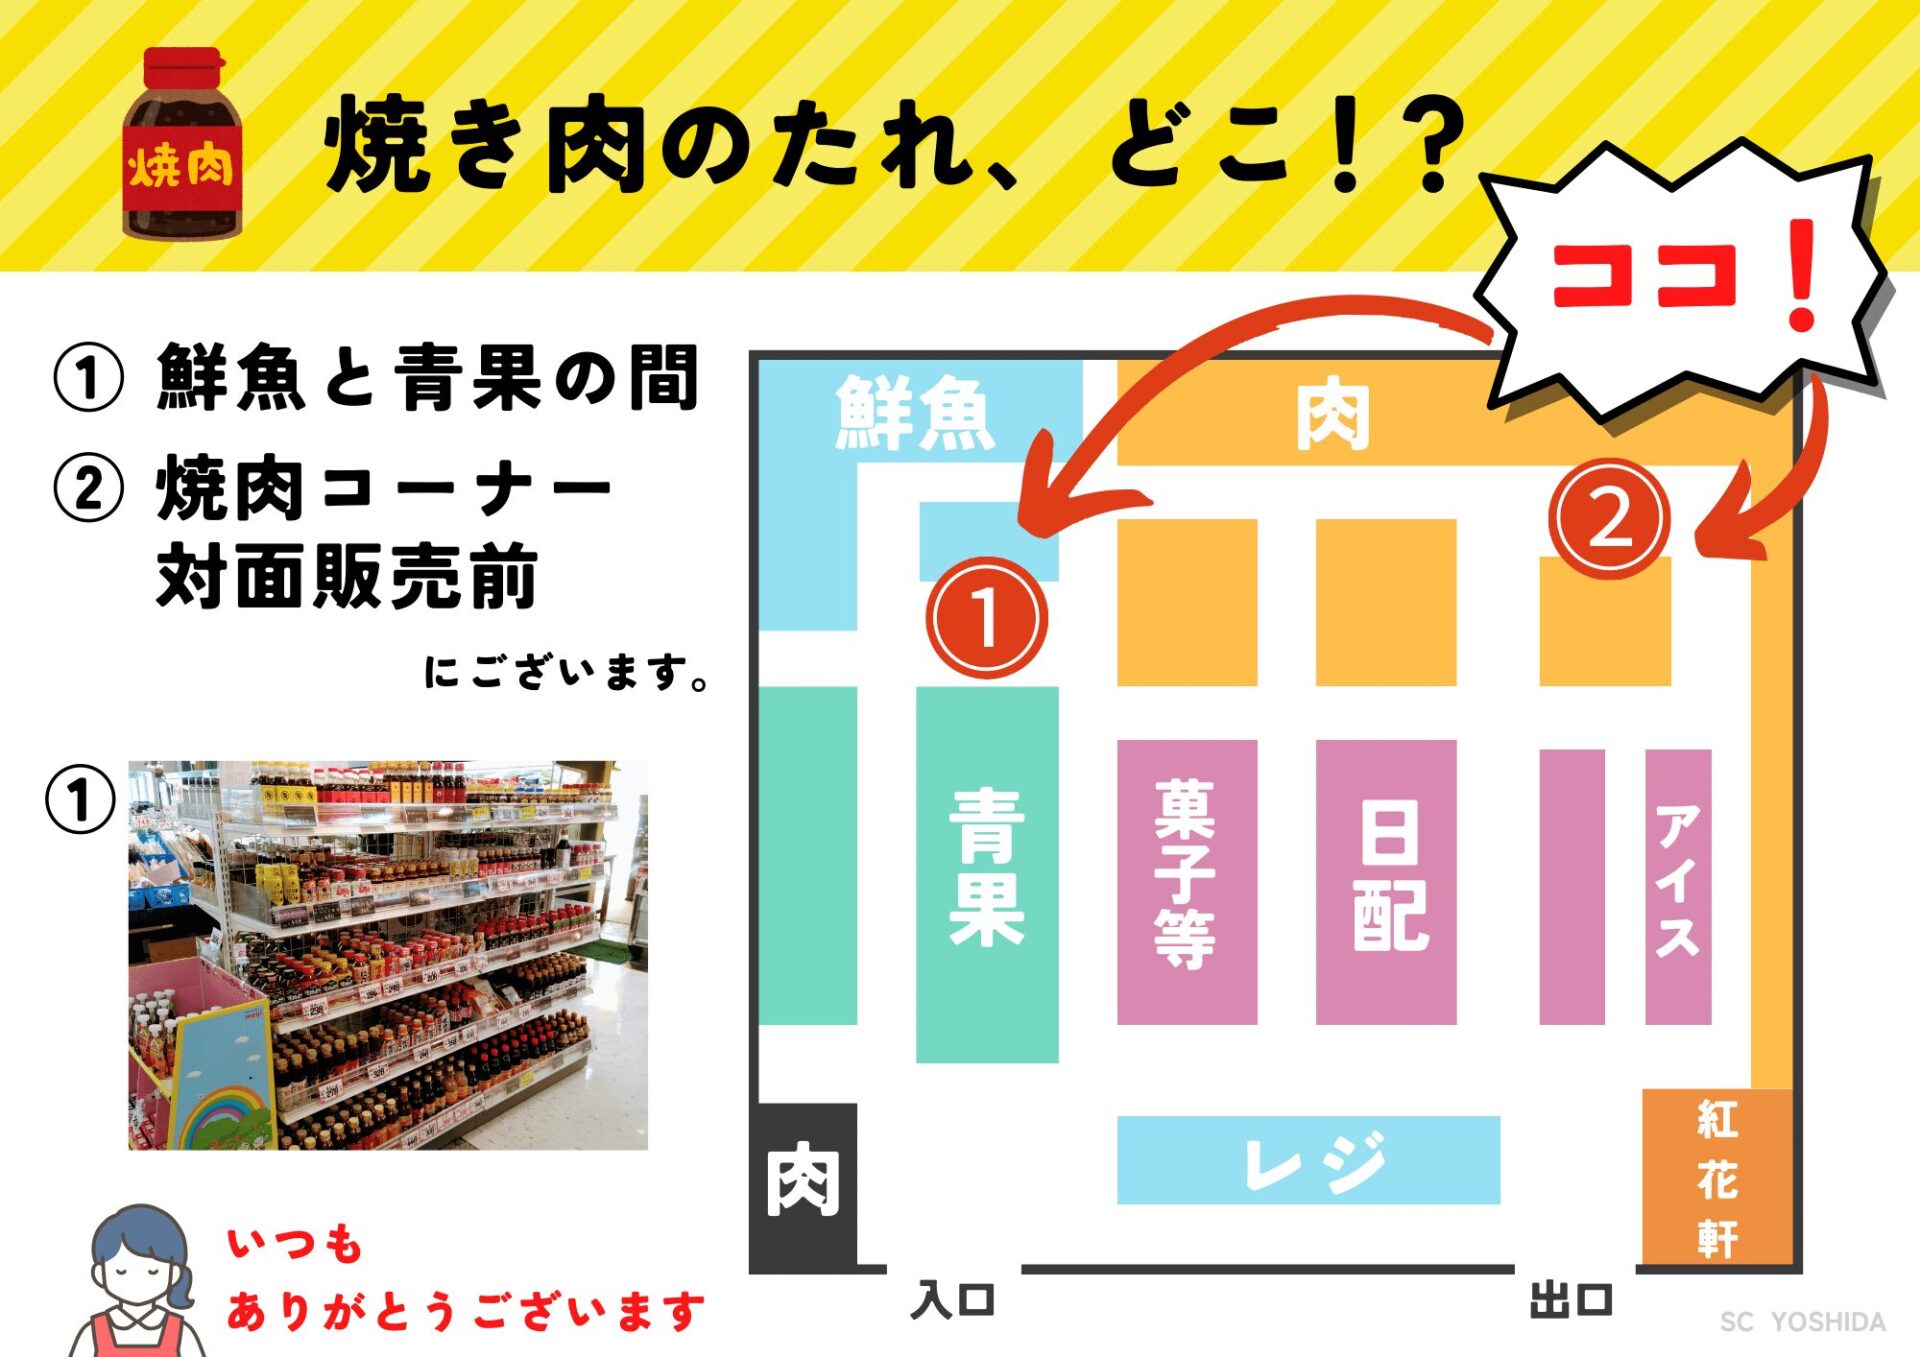 たれ販売箇所を示したマップポスターです。１箇所目は鮮魚と青果の間、2箇所目は焼肉コーナー対面販売前にあることを示しています。